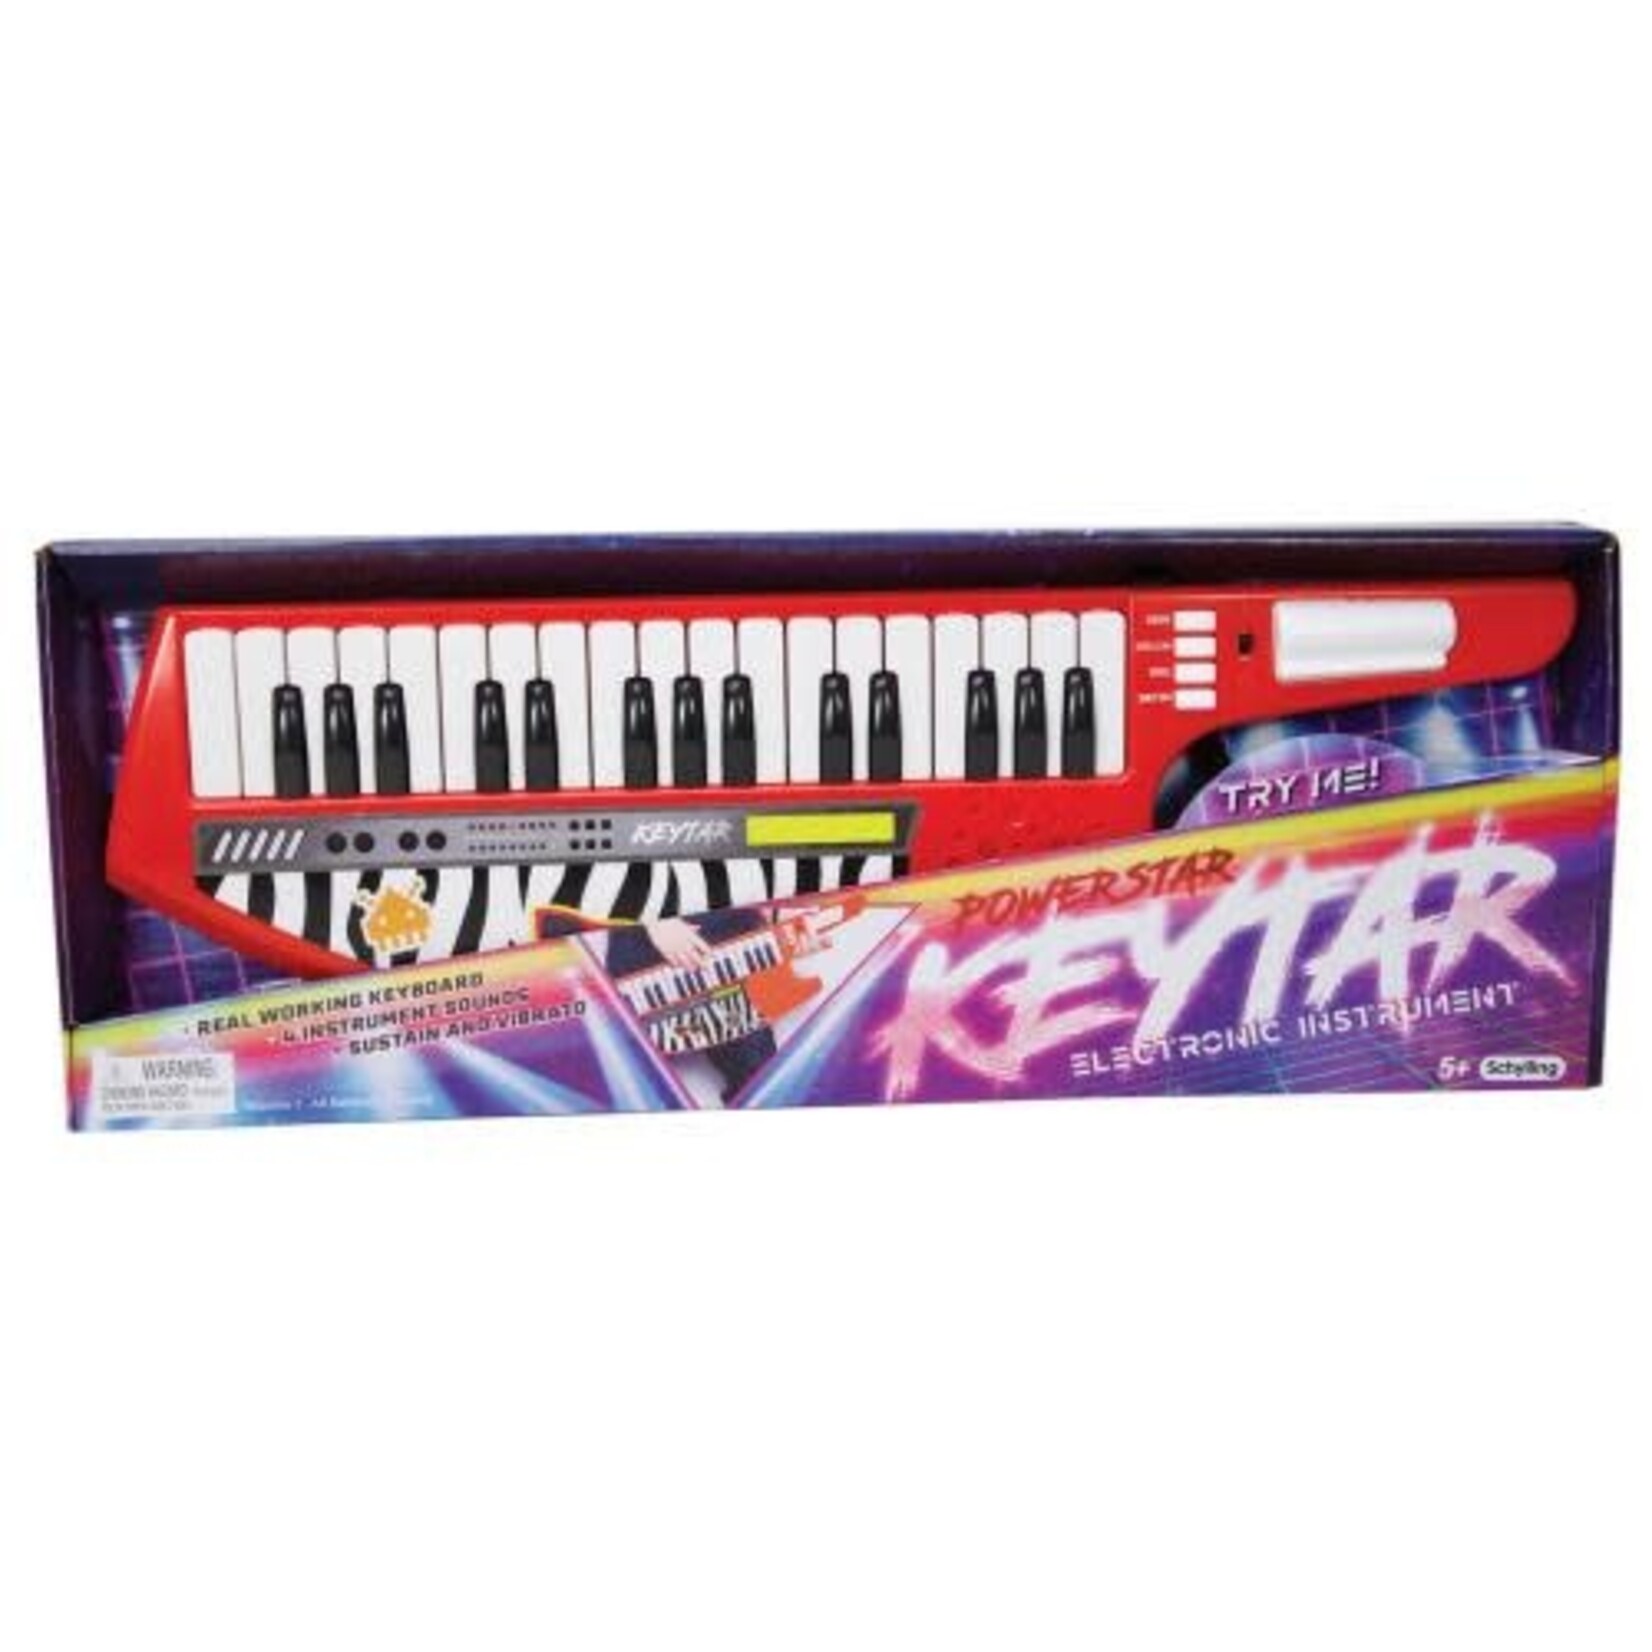 Schylling Powerstar Keytar